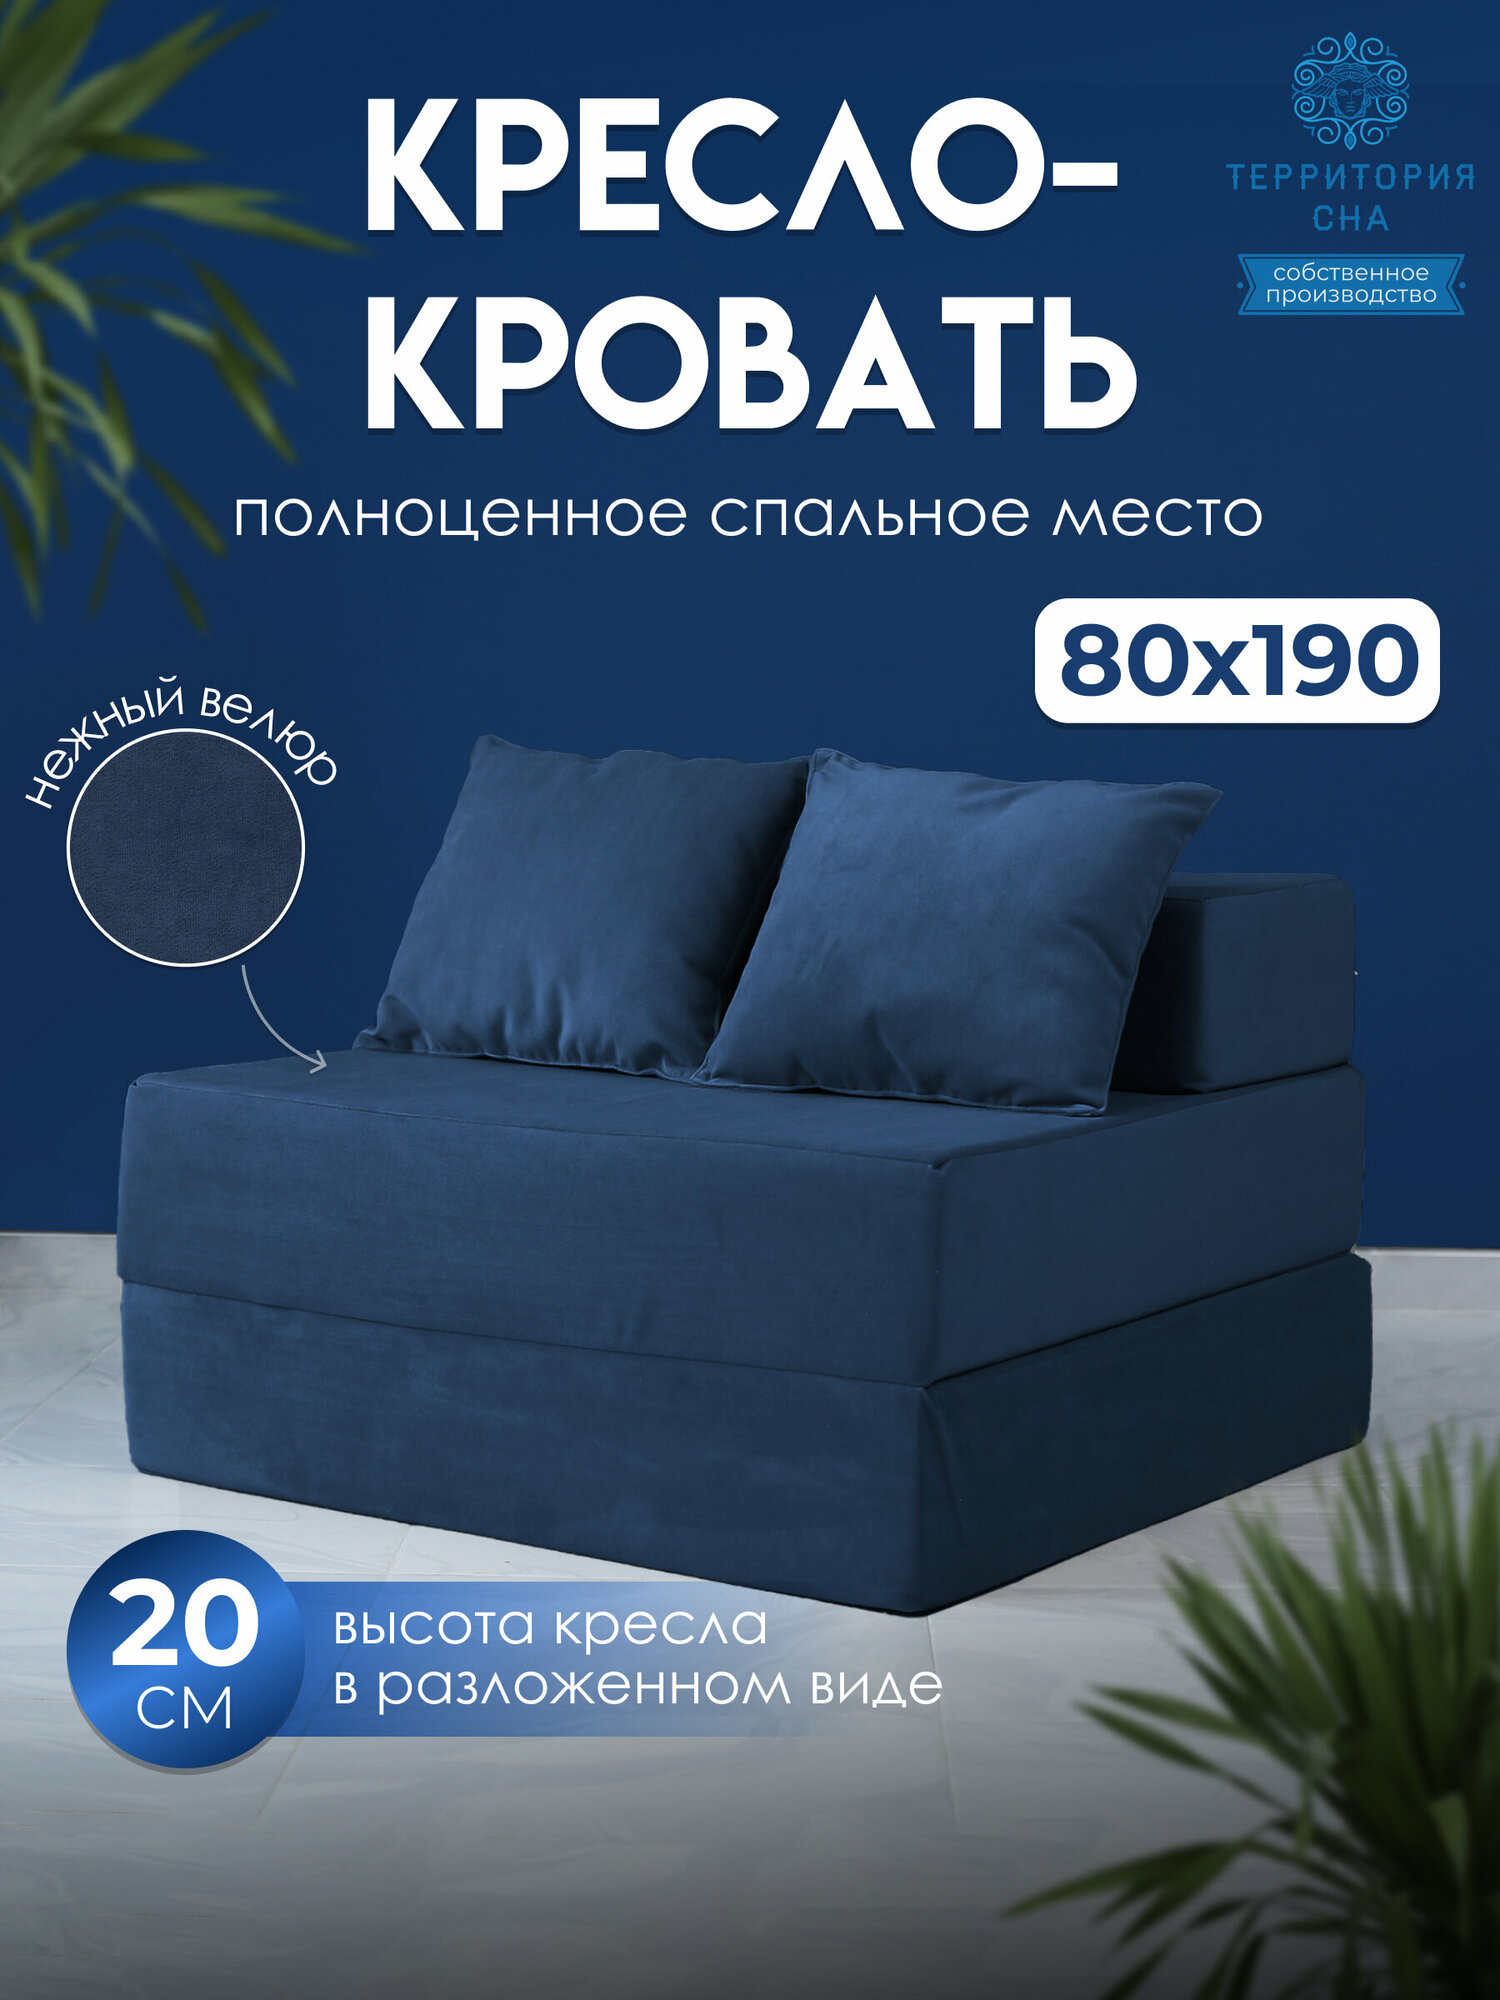 Бескаркасное кресло-кровать 80х190 см, высота матраса 20 см. Цвет: Темно-синий. Трансформер, раскладушка, складной матрас